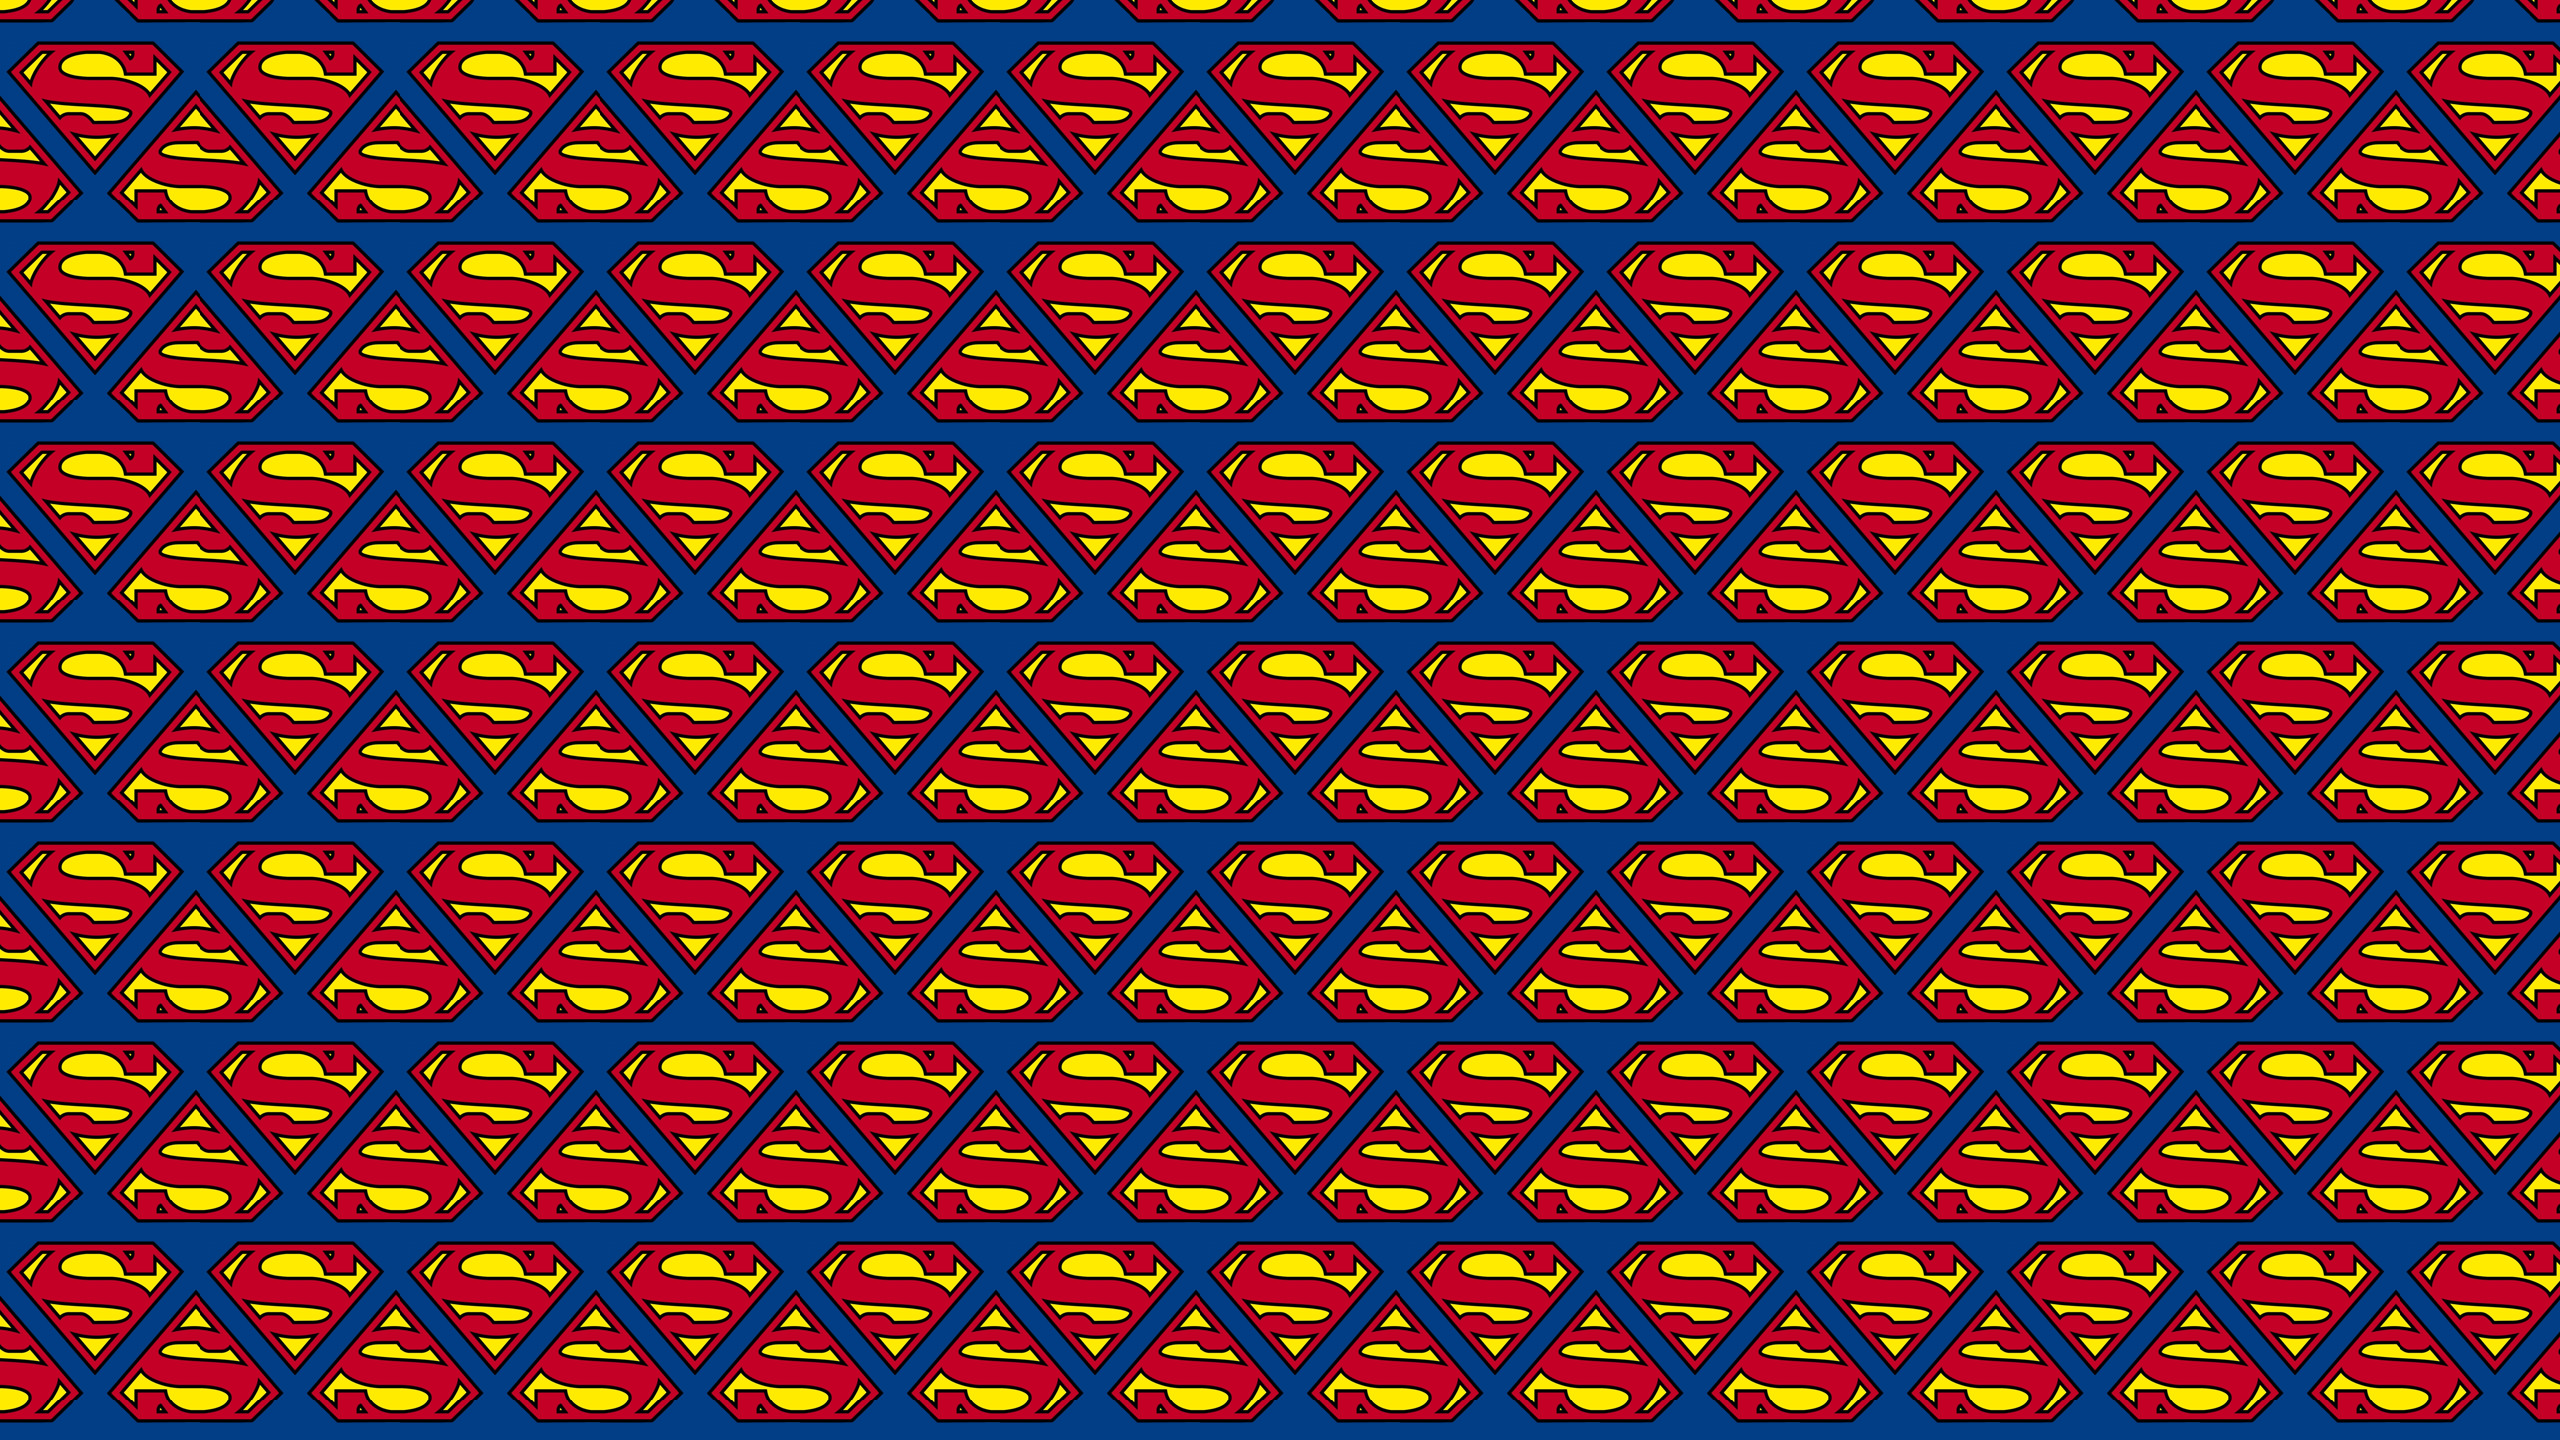 2560x1440 Superman logo pattern wallpaper